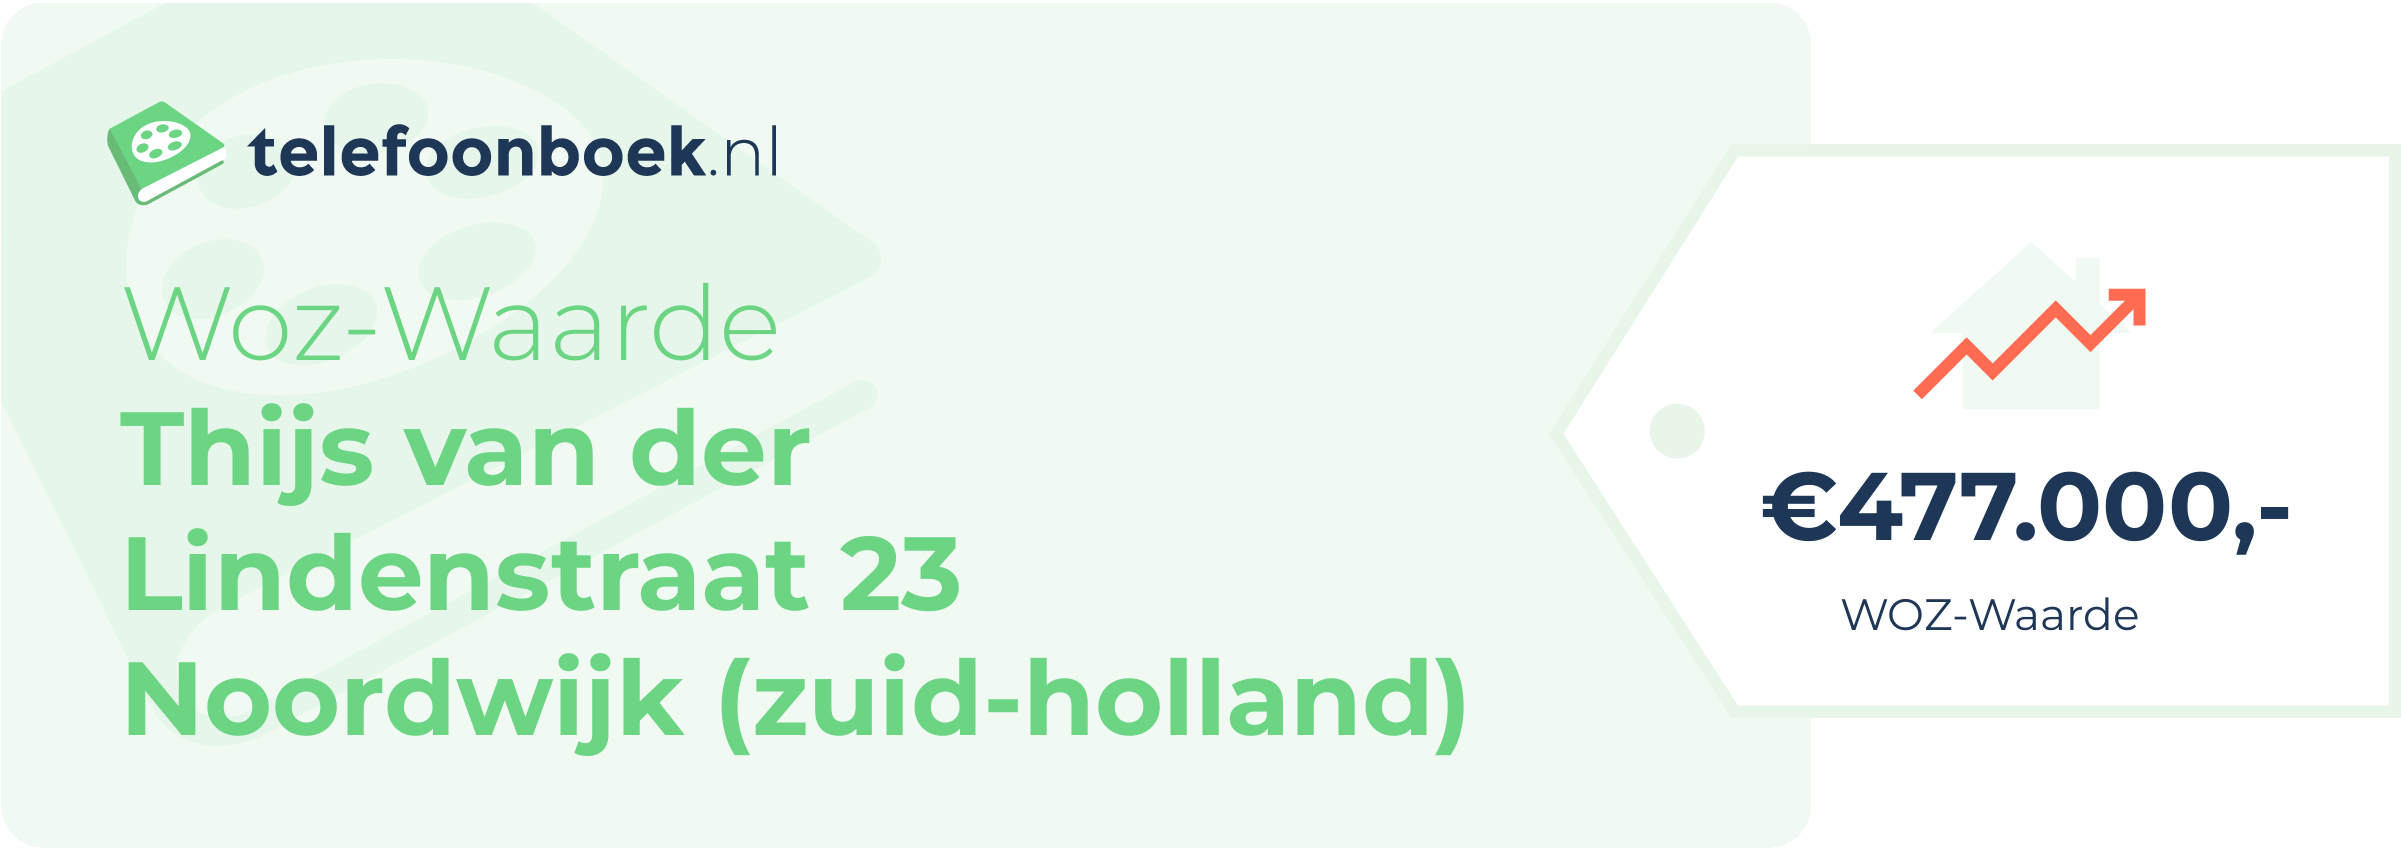 WOZ-waarde Thijs Van Der Lindenstraat 23 Noordwijk (Zuid-Holland)